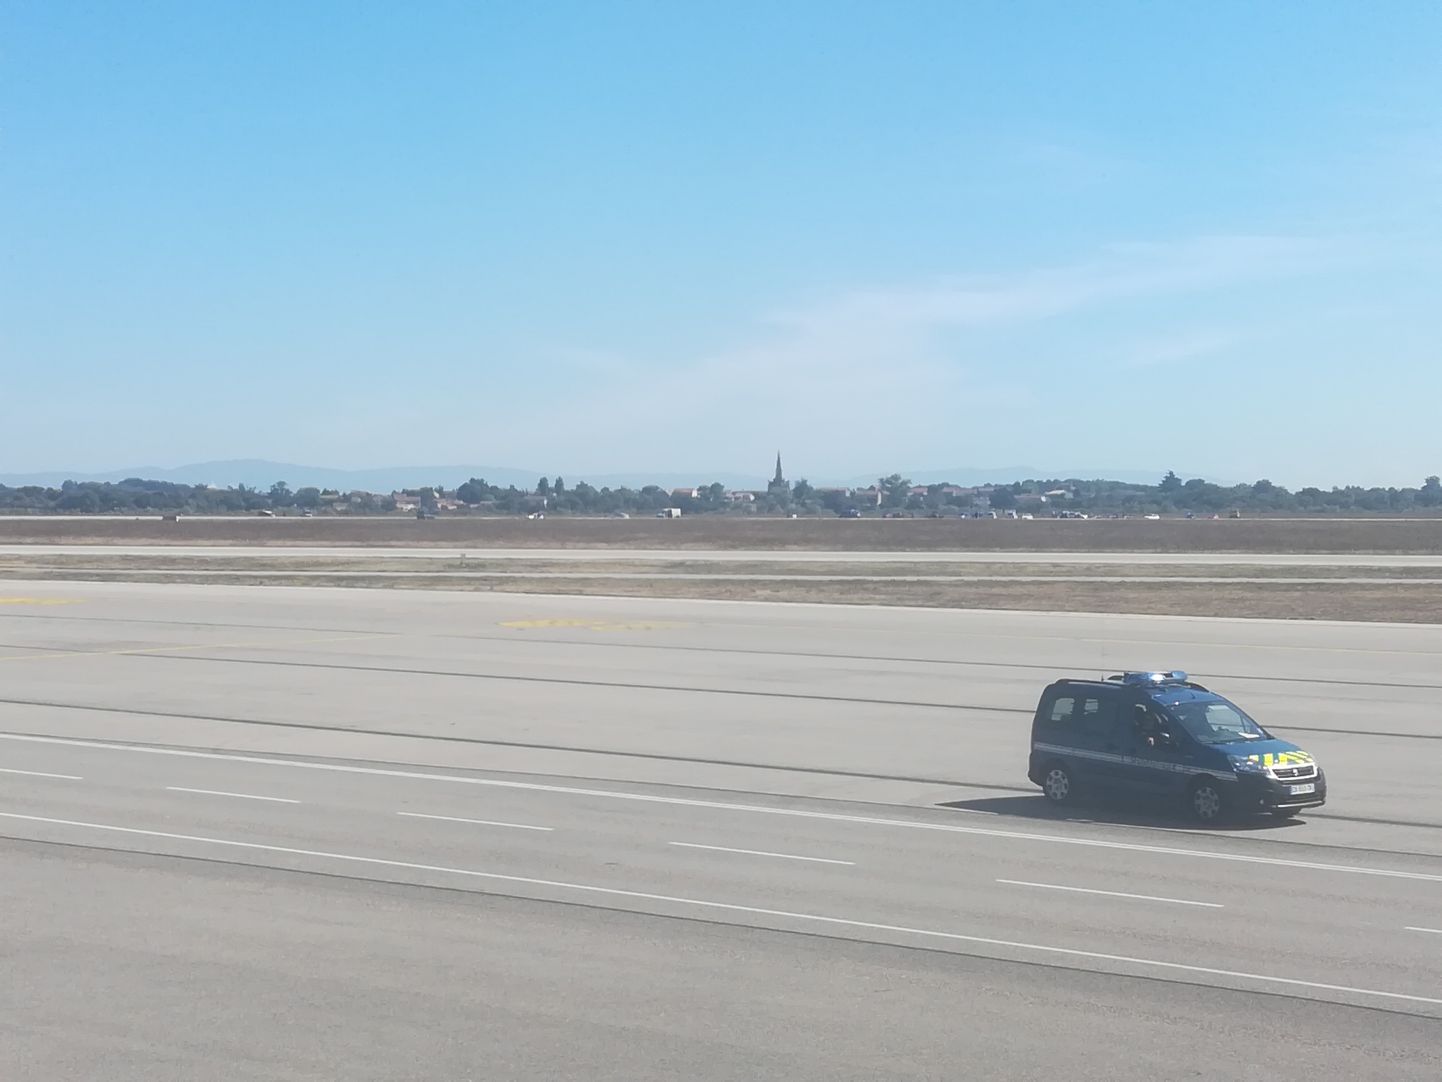 Lennujaamast mobiiltelefoniga tehtud pildil on näha Prantsuse sandarmeeria sõidukit Lyoni Saint-Exupery lennujaama rajal.